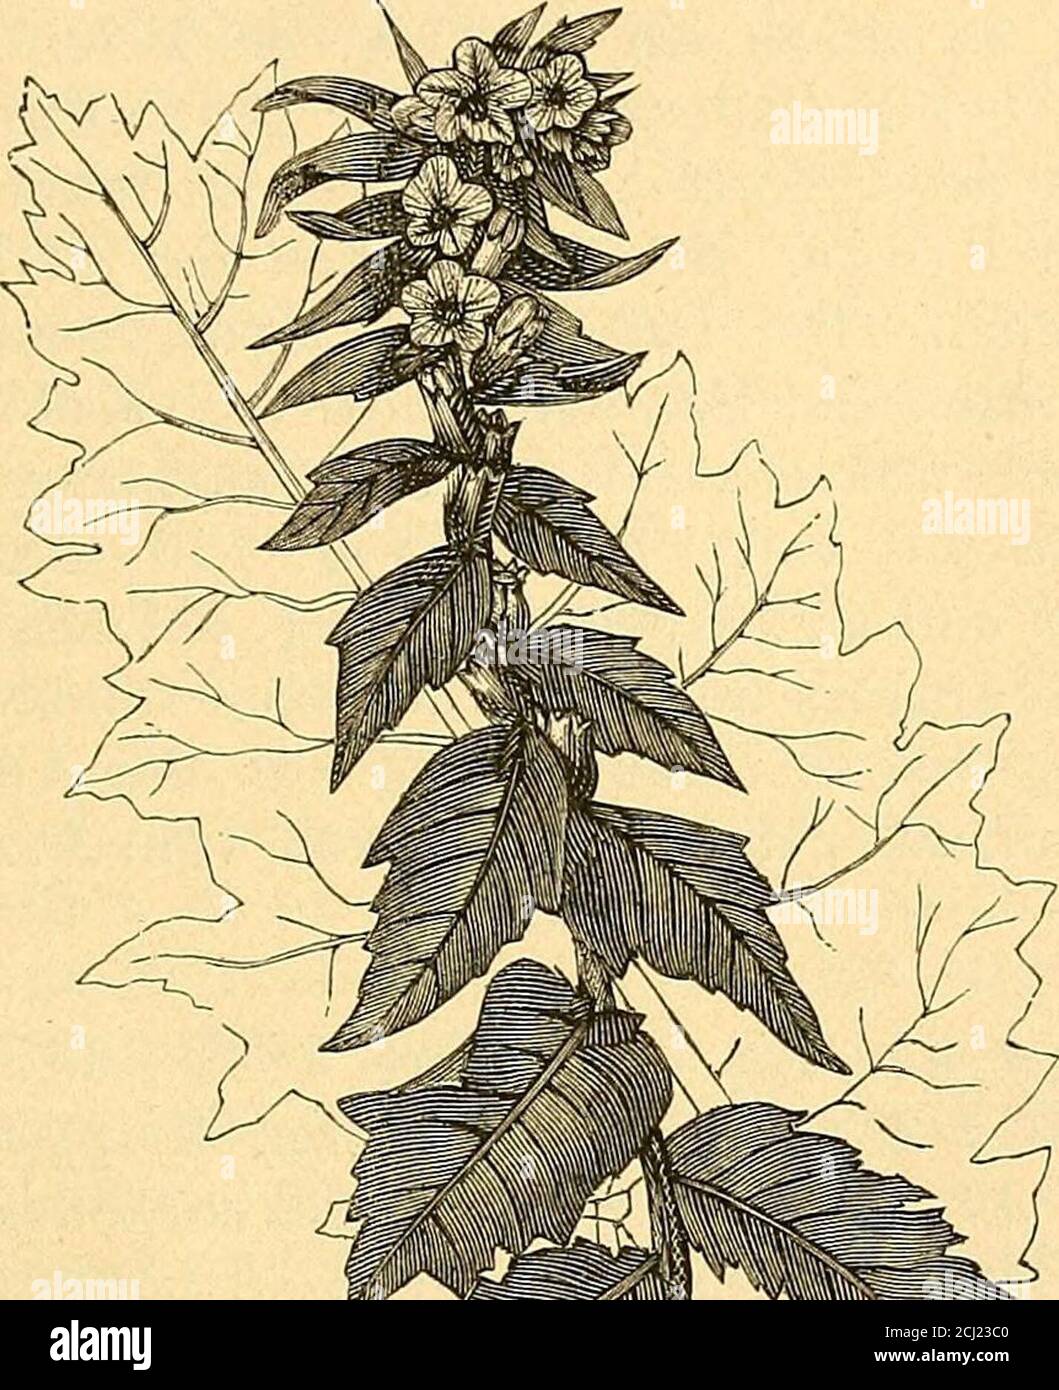 . Lehrbuch der Intoxikationen . ren zur Klasse der Solana-ceen und sind mit Blüte und Frucht in Fig. 117 u. 118 dargestellt. Inbeiden sind neben Atropin noch andere Basen enthalten. Das Hyos-cyamin findet sich in denselben zwei Pflanzen, sowie in verschiedenen Atropin und Hyoscyamin. 1041 Arten von Hyoscyamus, namentlich in Hyosc. niger, dem Bilsen-kraut (siebe Fig. 119, 120, 122), in Duboisia myoporoides, Sco-polia atropoides und Scop. japonica, in Anisodus luridus (sämt-lich zu den Solanaceen gehörig), Dymonds will auch in Lactucasativa, dem Kopfsalat, und in Lactuca virosa, dem Giftlattich( Stock Photo